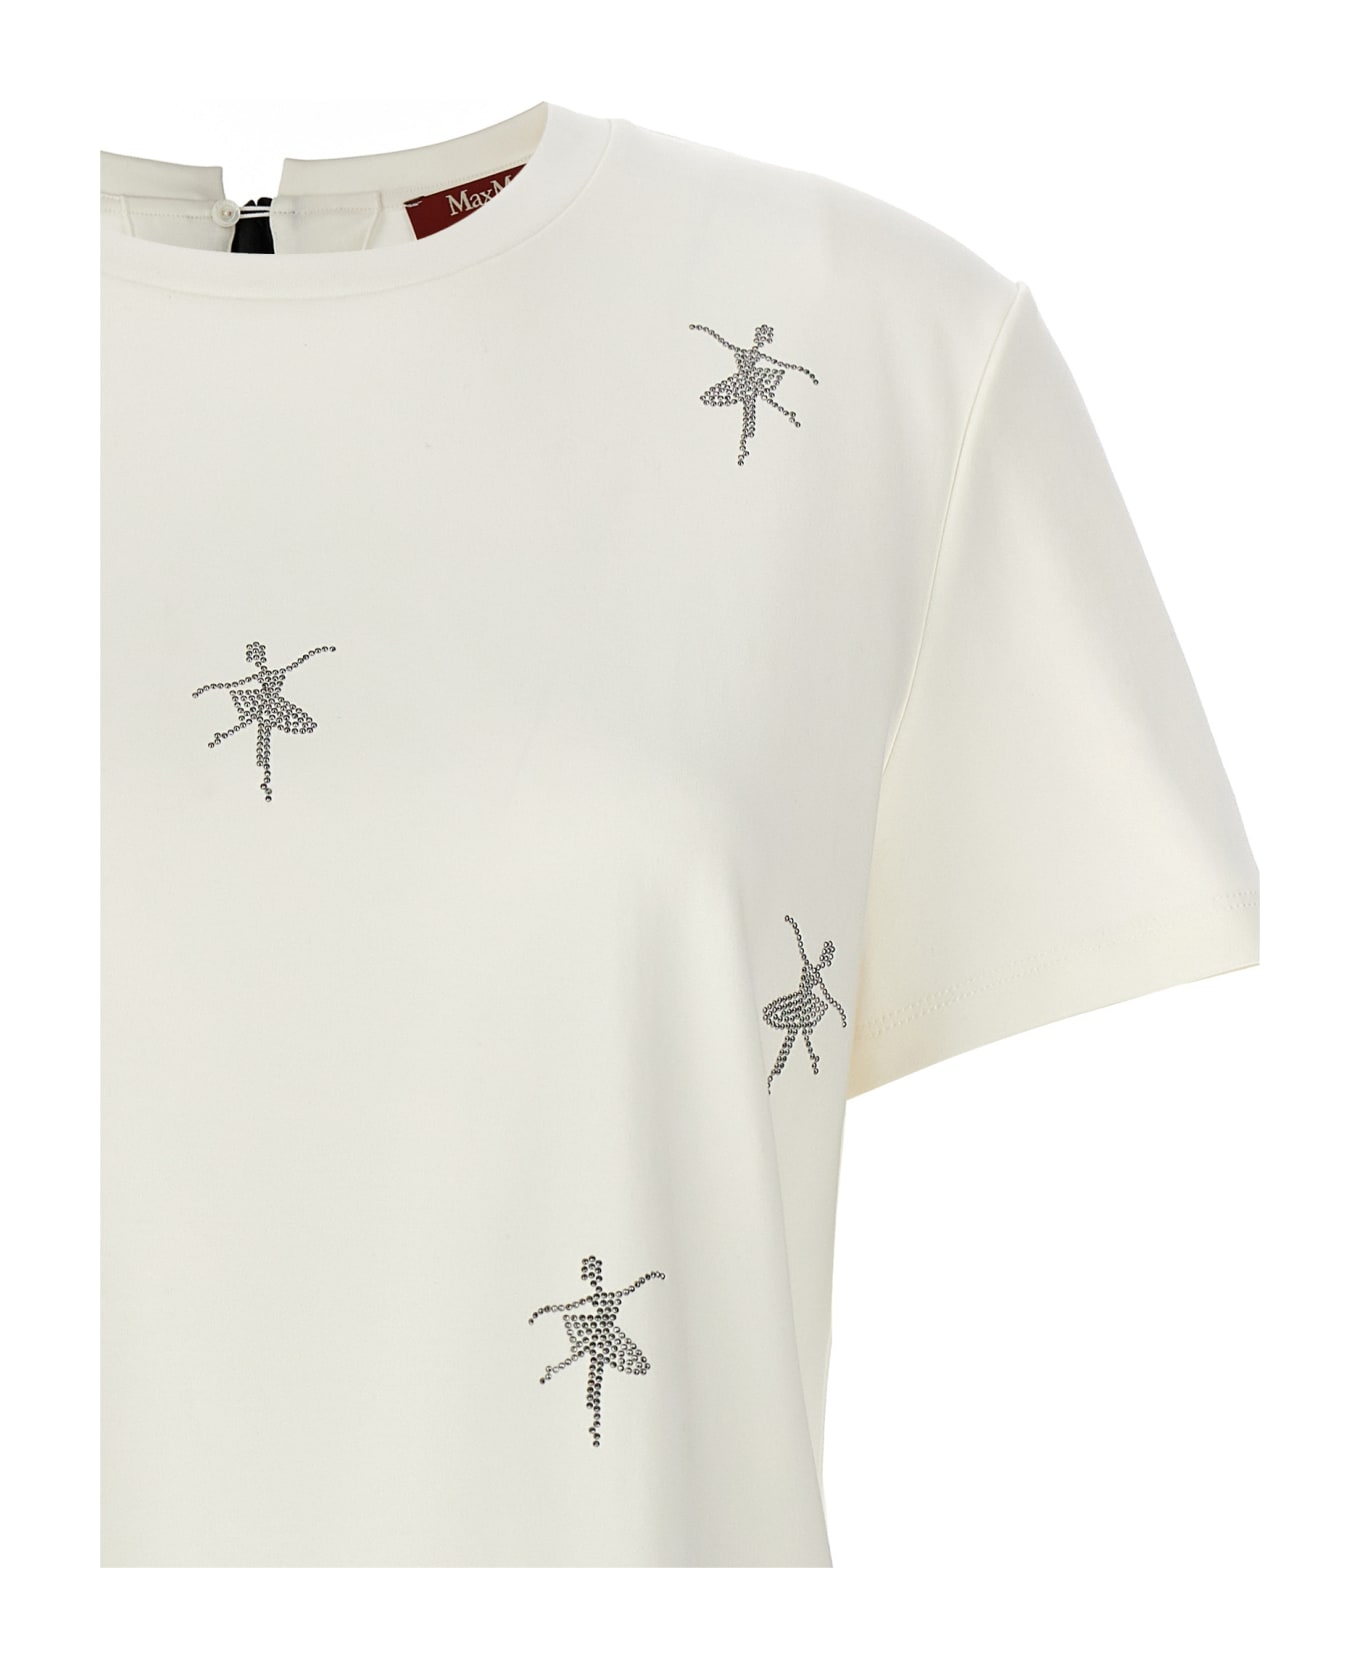 Max Mara Studio 'secchia' T-shirt - White